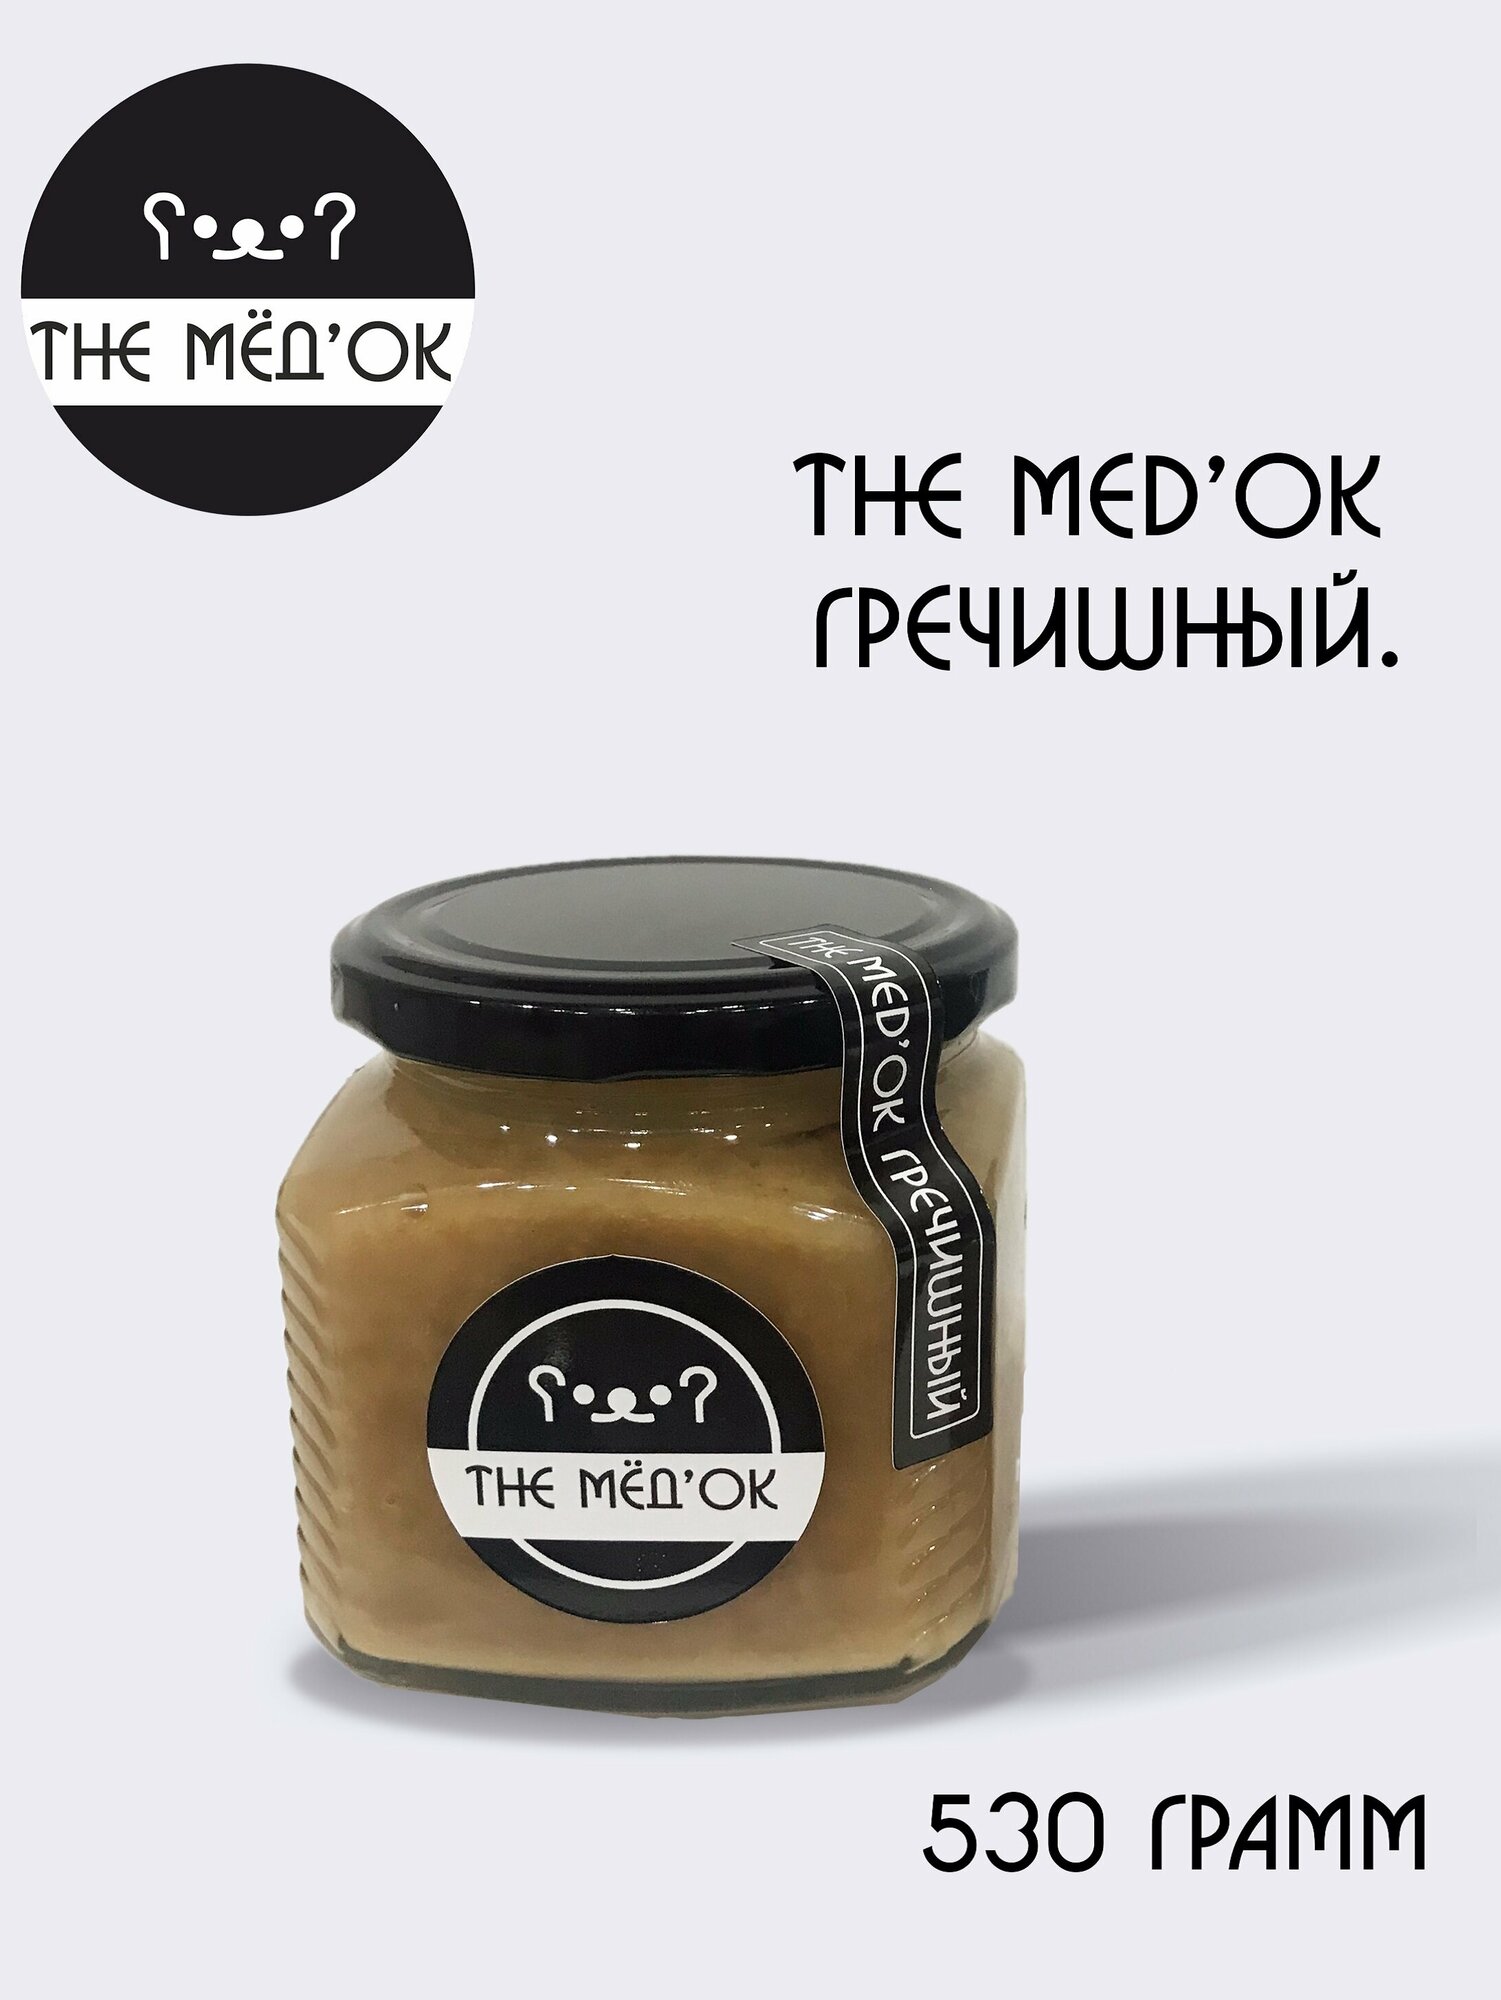 Гречишный Мёд натуральный THE MED'OK гречишный 530 грамм - фотография № 1